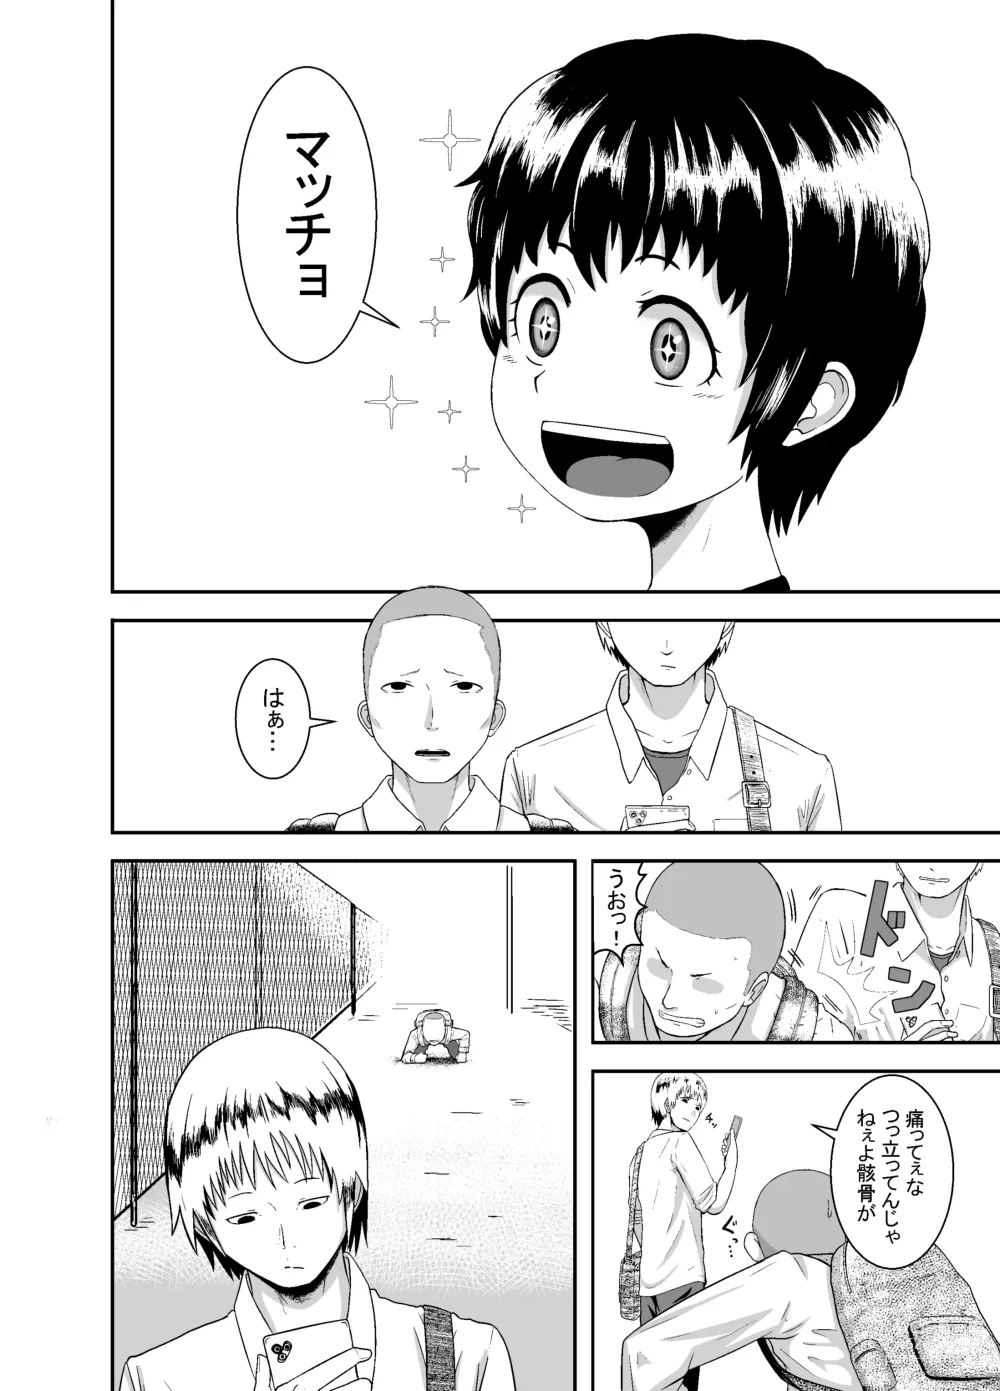 Page 5 of doujinshi Kimi ga Yarareru Kurai nara ~Genkikko Crisis~